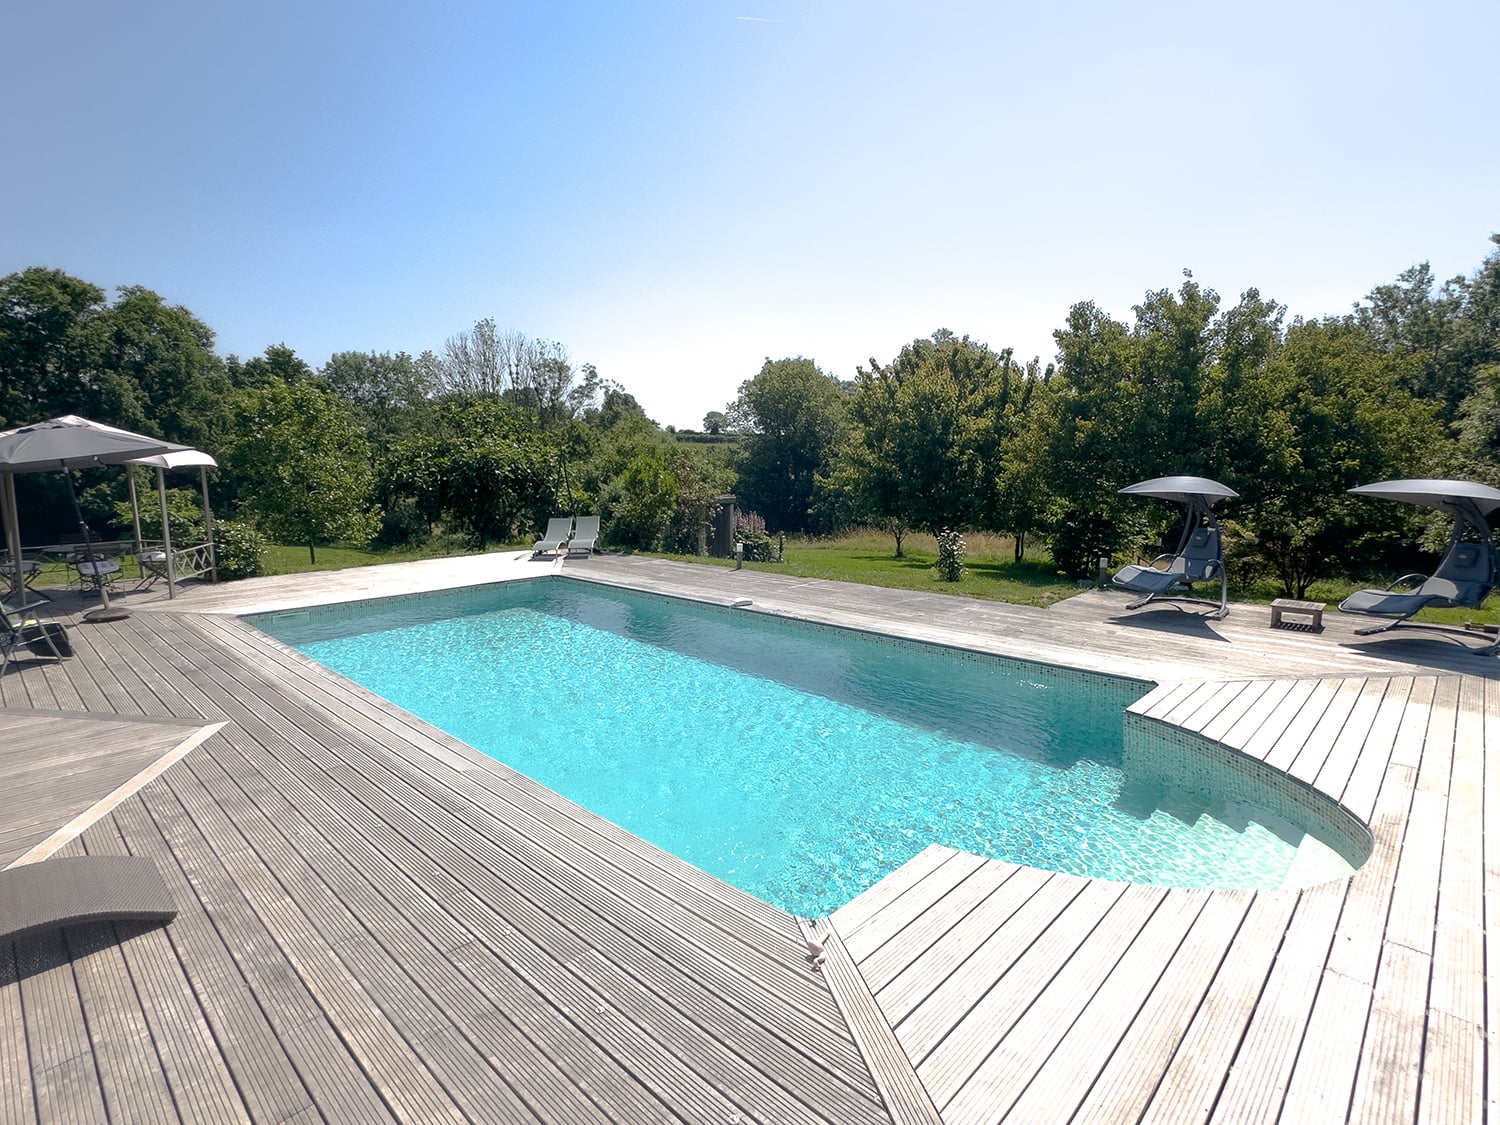 Shared pool in Pays de la Loire